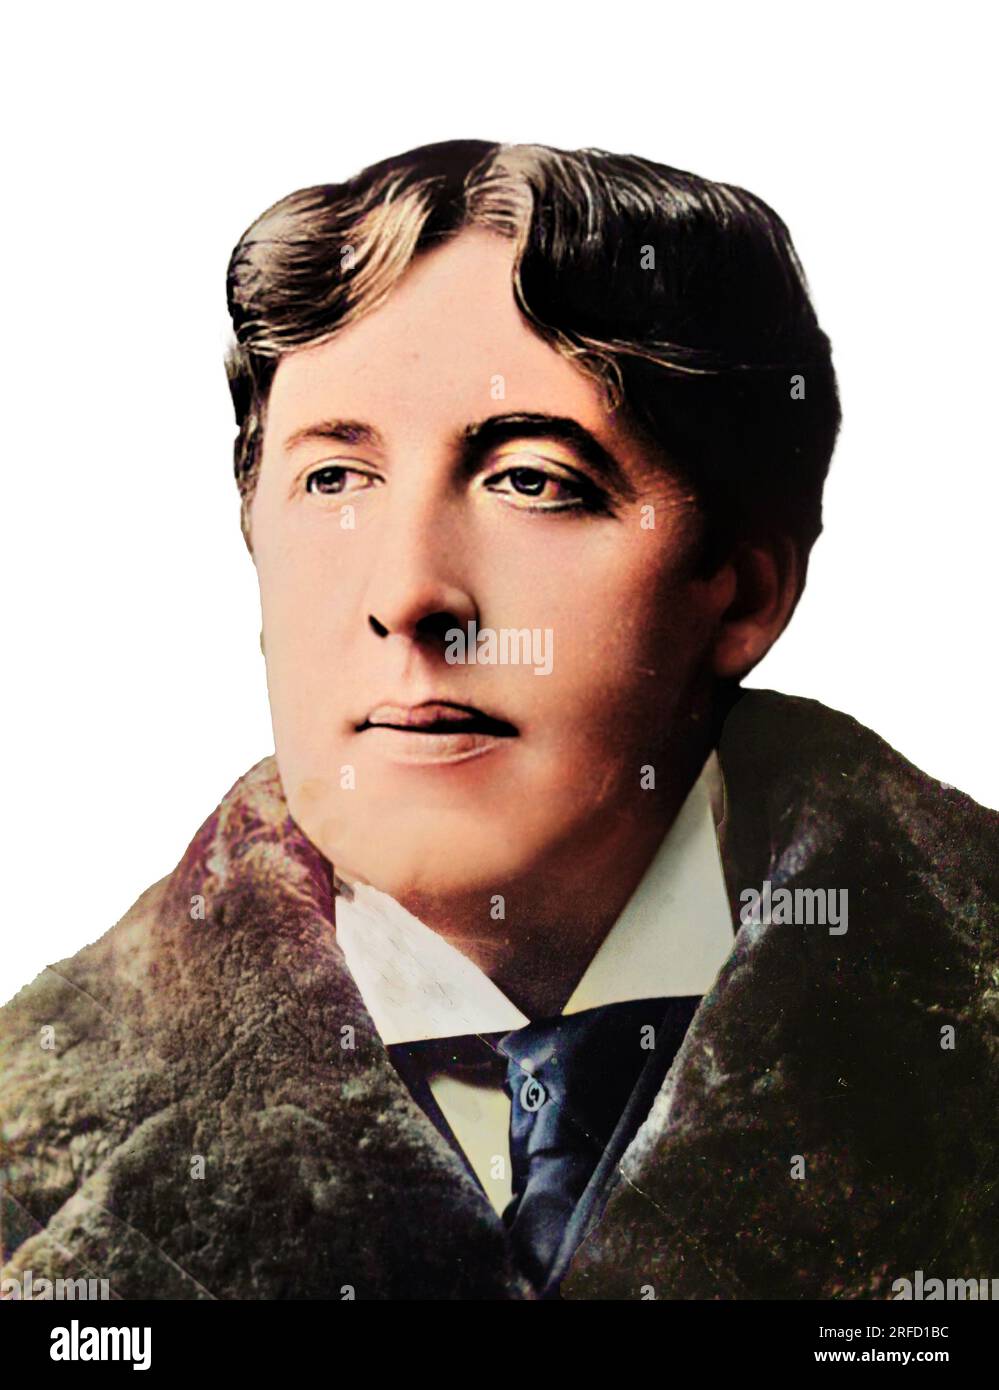 Dies ist ein farbiges Bild von Oscar Wilde (1854-1900), dem irischen Dichter und Dramatiker. Nach Angaben der Bain-Sammlung wurde das Originalbild im Jahr 1900 aufgenommen, dem Jahr seines Todes. Seine bekanntesten Stücke, Lady Windermere's Fan, Eine Frau ohne Bedeutung, Und ein idealer Ehemann wird noch heute vorgeführt.ein schlecht verurteilter Versuch, den Marquis von Queensbury wegen Verleumdung zu verfolgen, scheiterte und Wildes privaten schwulen Lebensstil wurde aufgedeckt.Dies führte zu seiner Anklage wegen grober Anstandslosigkeit und er wurde für zwei Jahre (1895-1897) inhaftiert. Nach seiner Freilassung aus dem Gefängnis zog er nach Frankreich und starb 1900 an Meningitis. Stockfoto